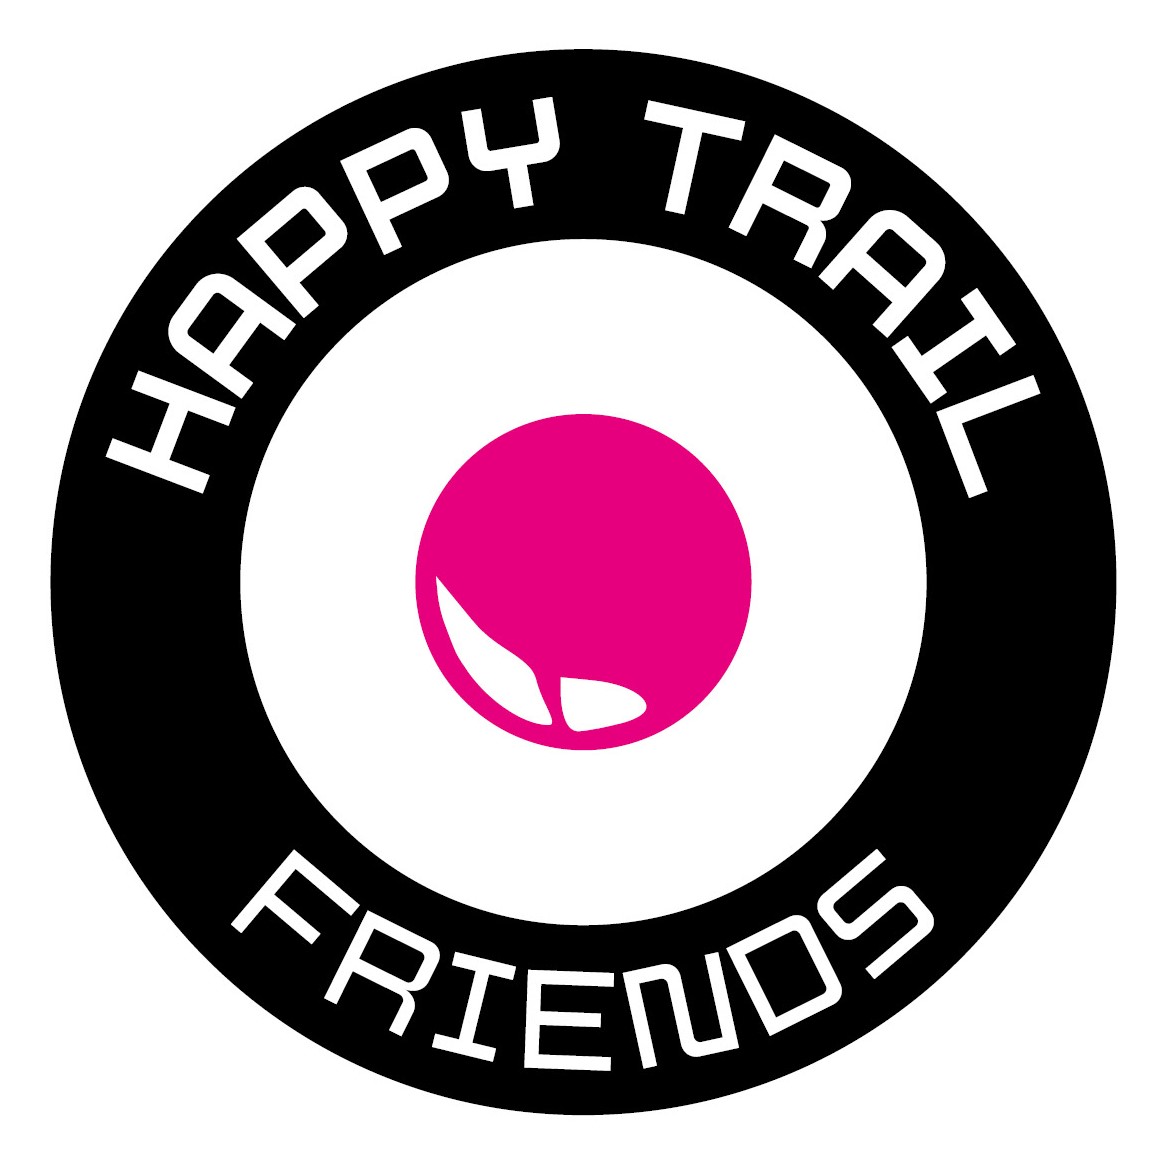 Happy Trail Friends e.V.